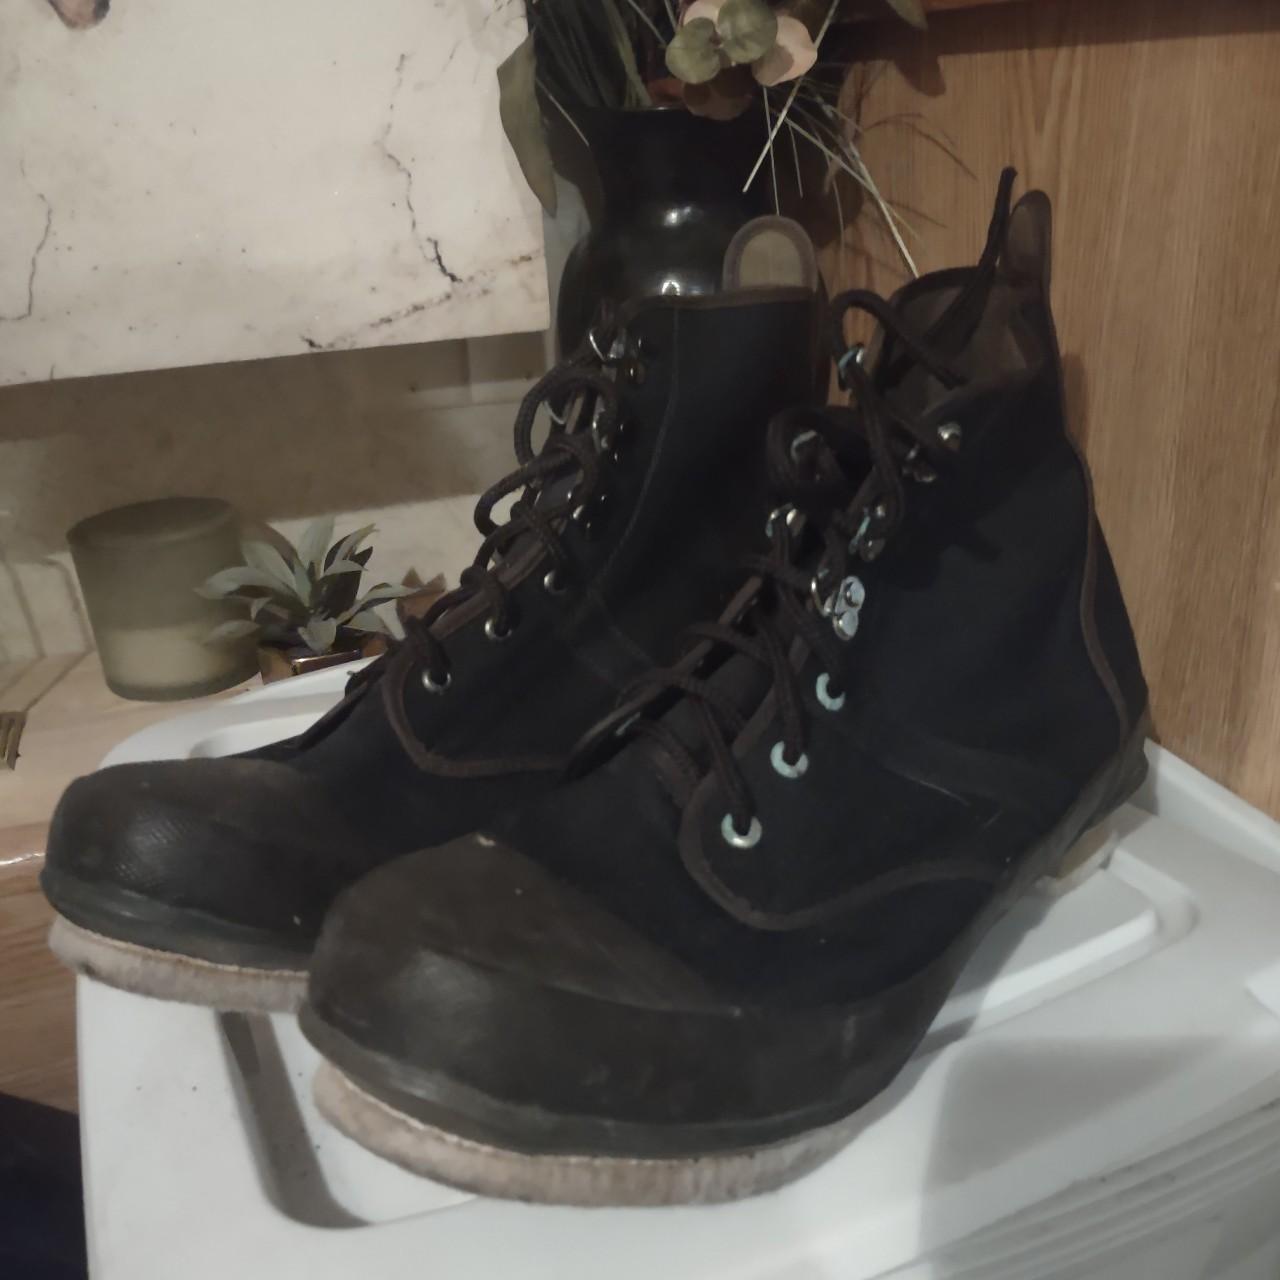 Preloved Men's Ankle Boots - Black - US 11